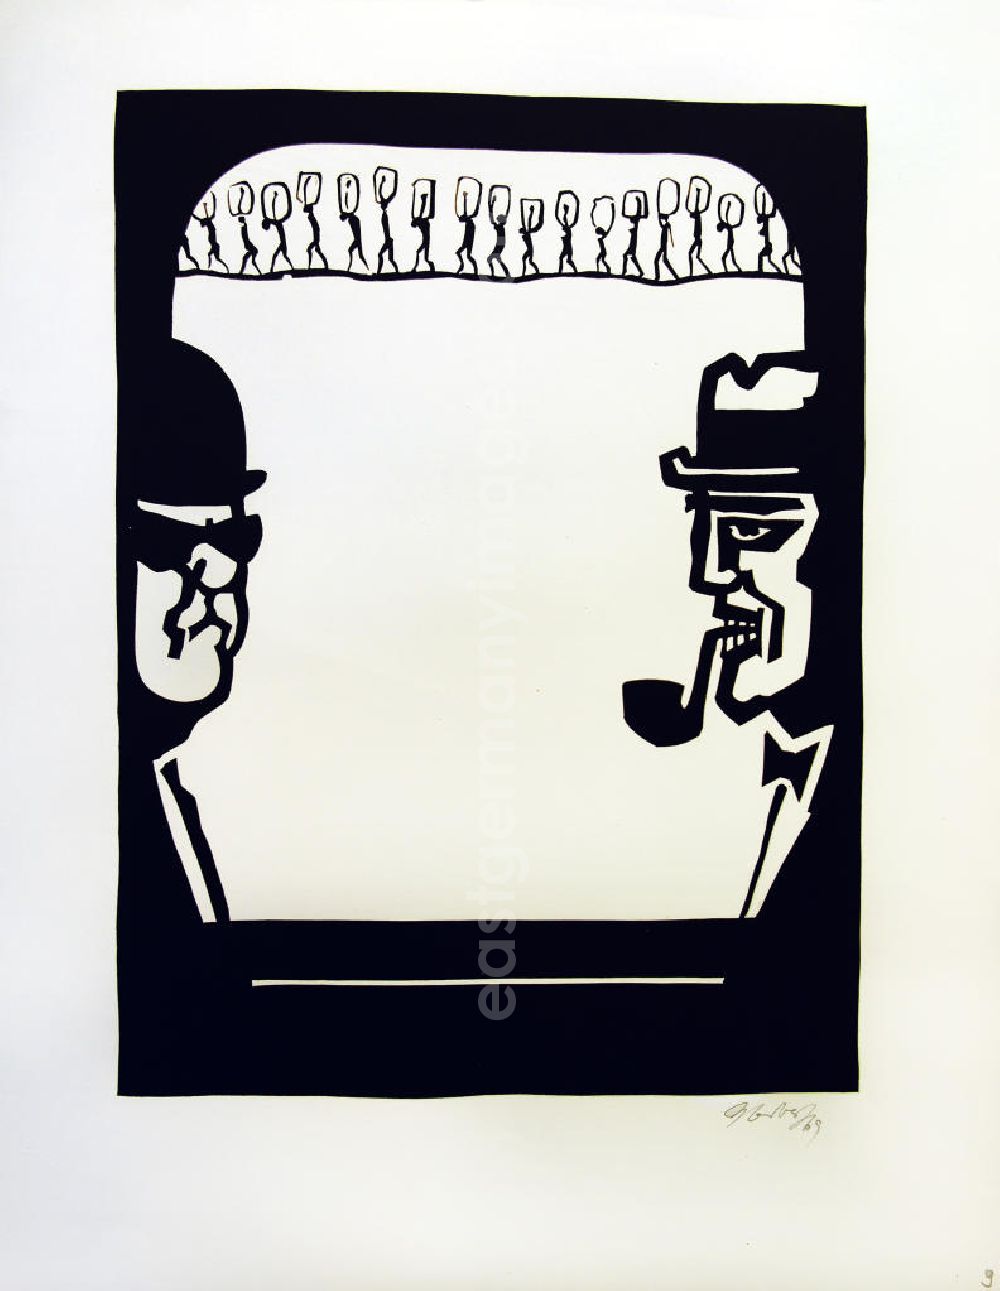 GDR picture archive: Berlin - Grafik von Herbert Sandberg Motiv 10 aus dem Zyklus Bilder zum Kommunistischen Manifest aus den Jahren 1967-72 mit 3